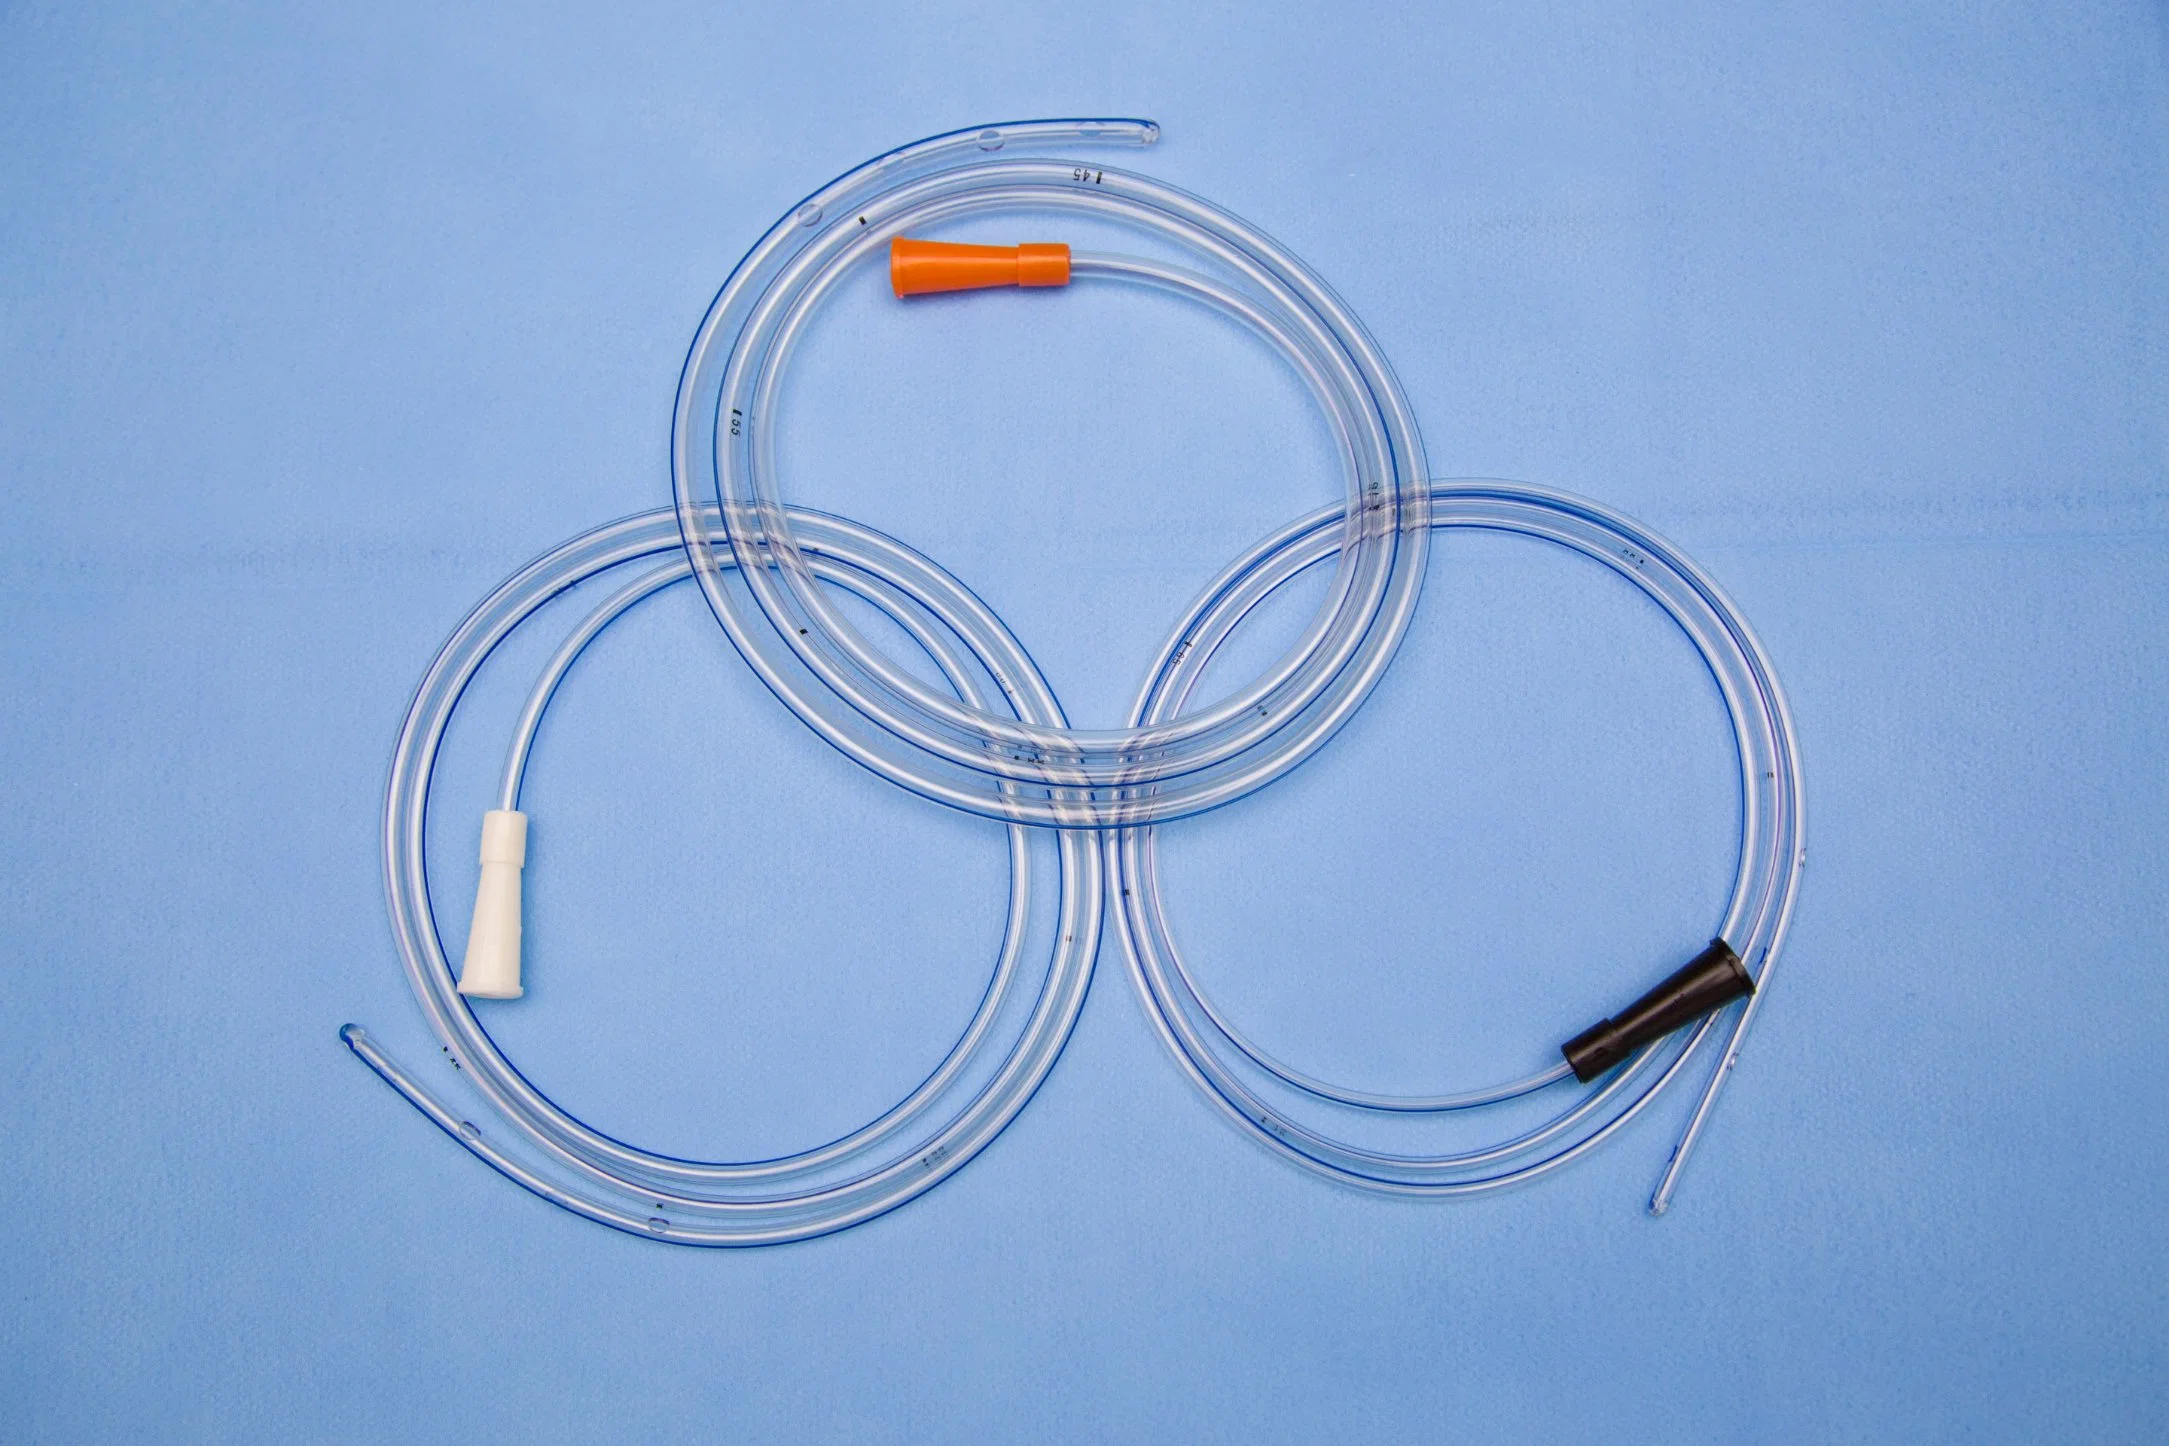 Les fournitures médicales jetables de différentes tailles de tube rectale